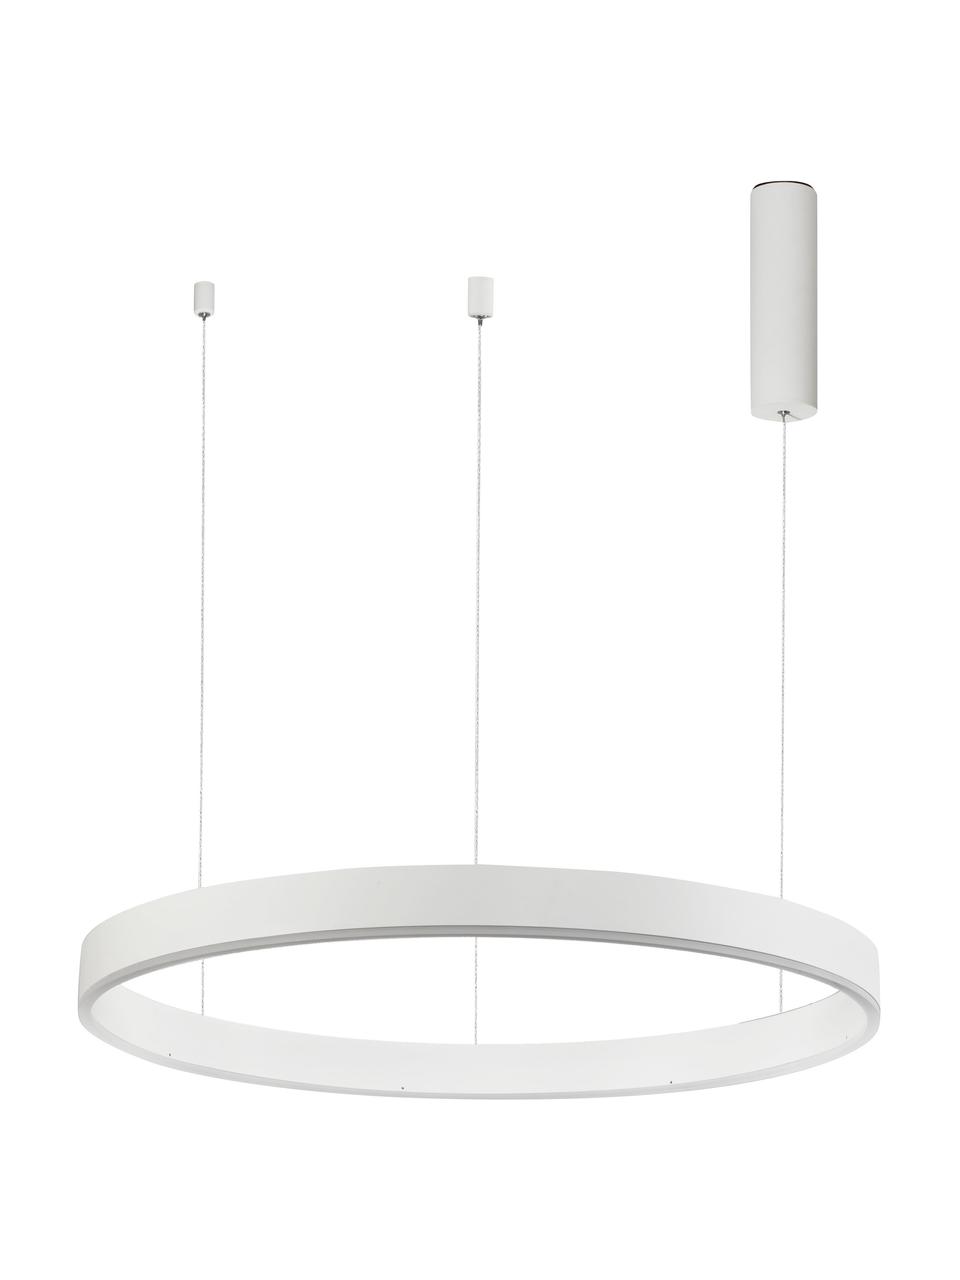 Grote LED hanglamp Motif in wit, Lampenkap: gecoat aluminium, Diffuser: acryl, Baldakijn: gecoat aluminium, Wit, Ø 60 x H 190 cm